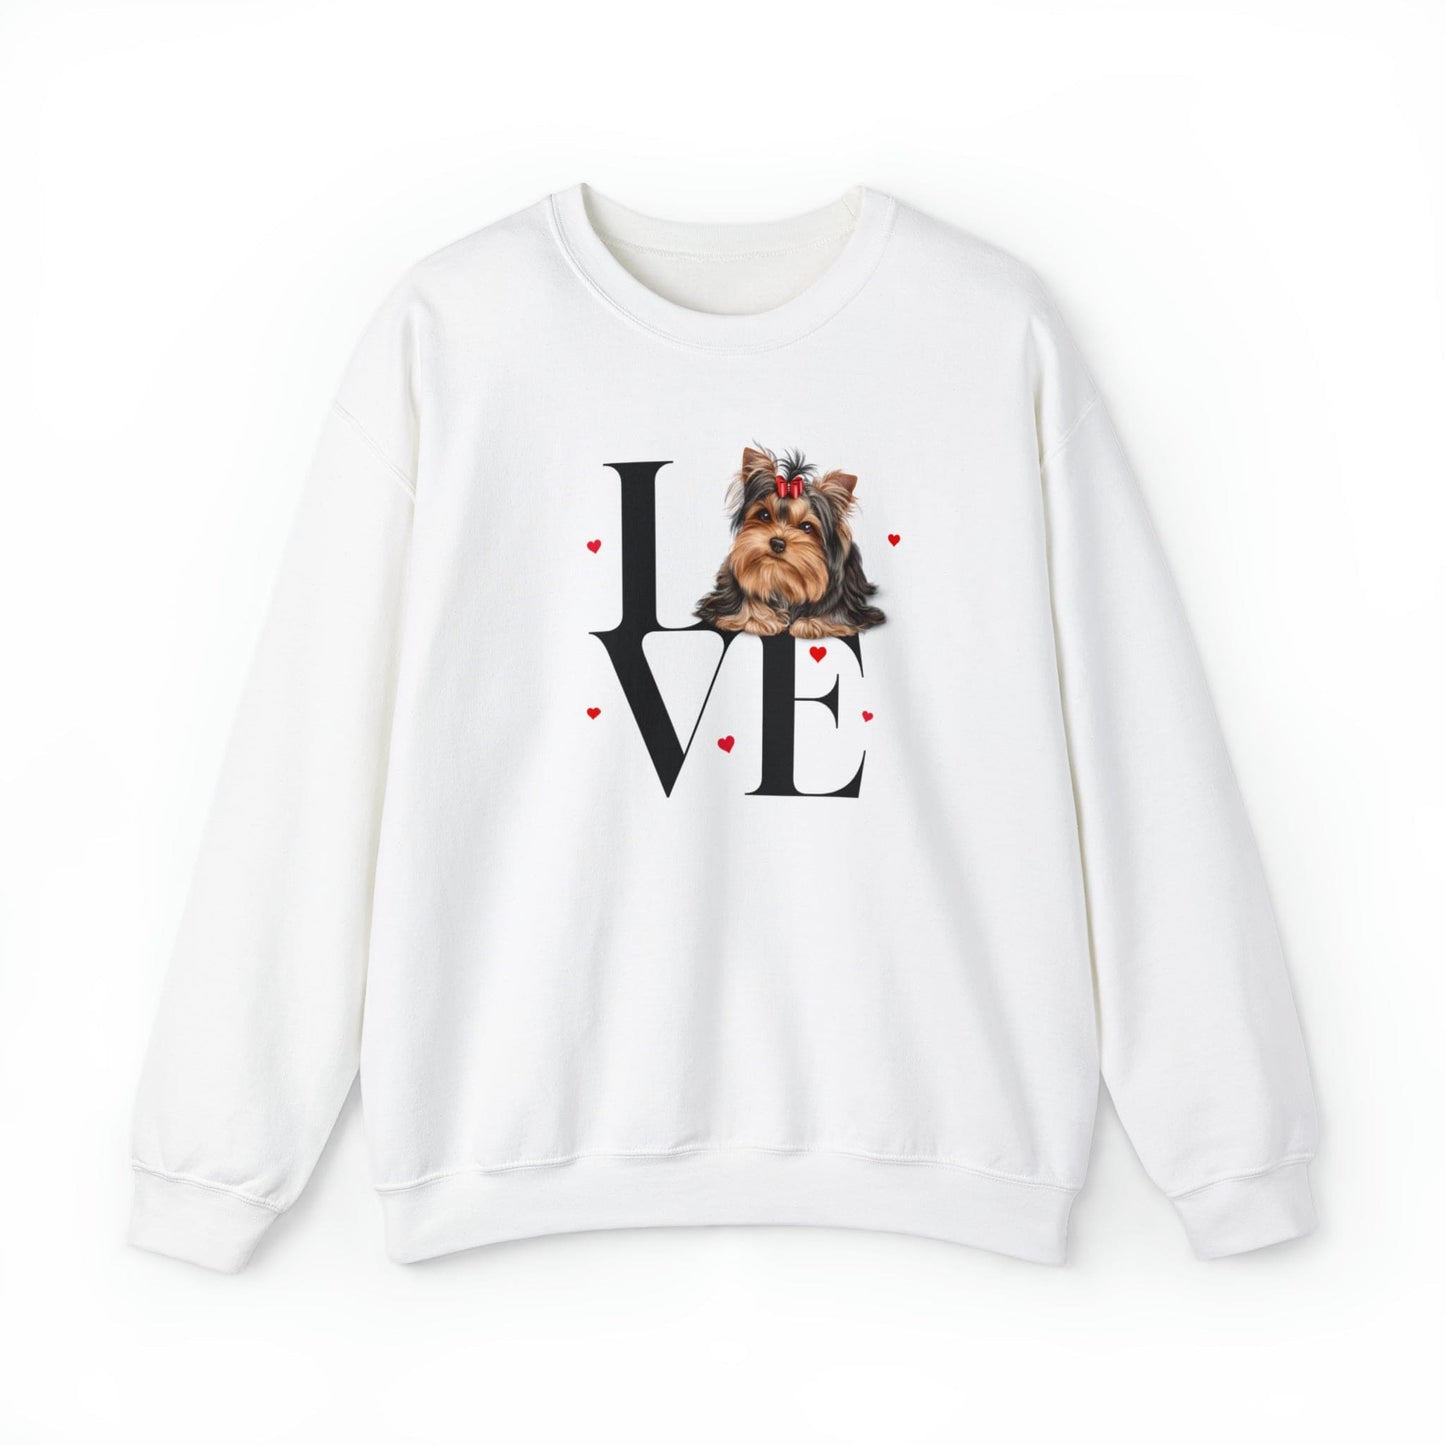 Yorkie Sweatshirt, Yorkshire Sweatshirts,  Love Yorkie Sweater